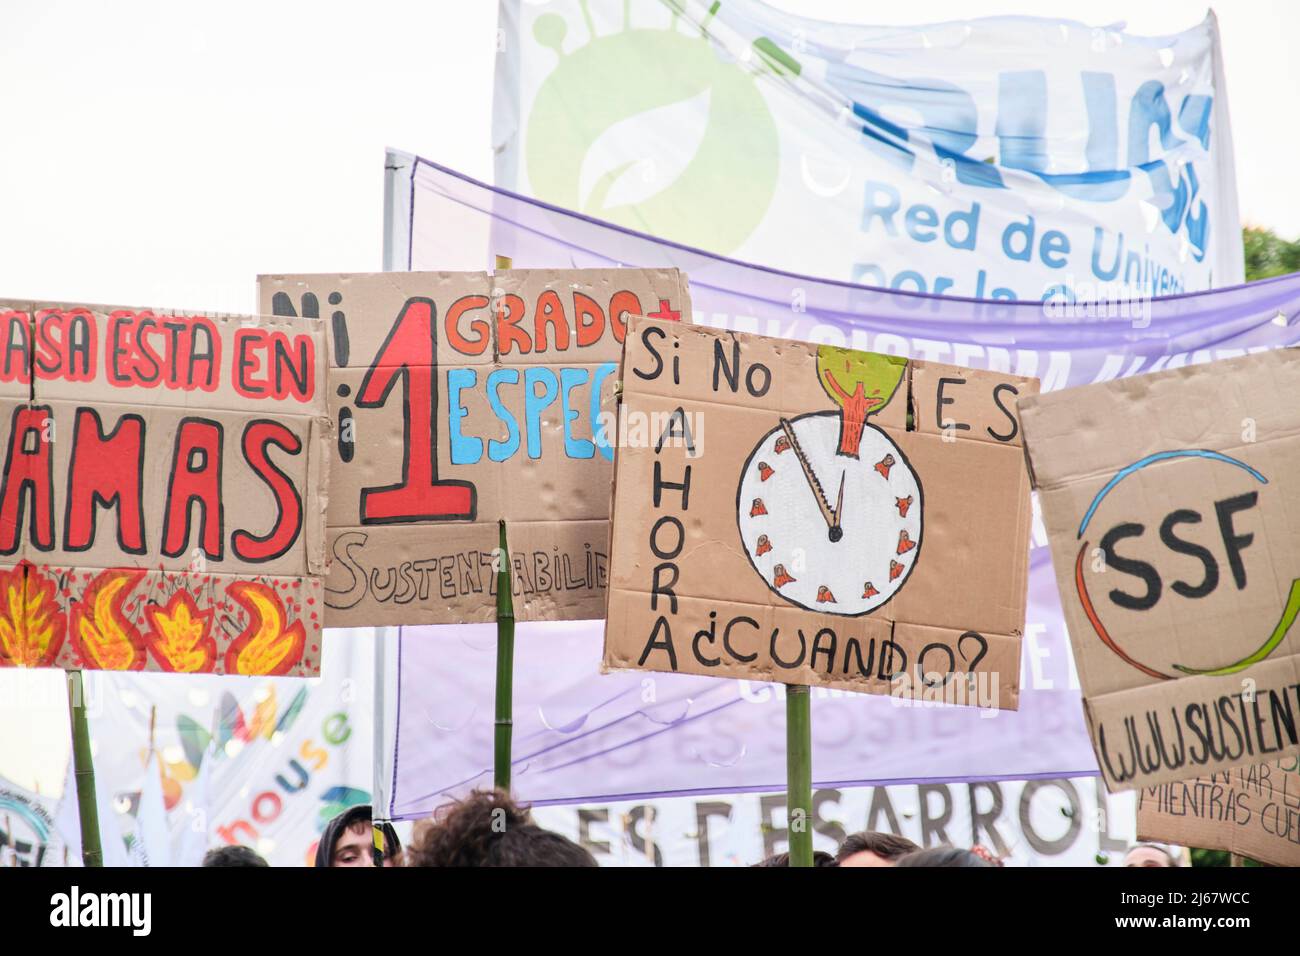 Buenos Aires, Argentine; 22 avril 2022: Activisme environnemental, affiches sur le réchauffement de la planète et la crise climatique lors de la manifestation du jour de la Terre. Banque D'Images